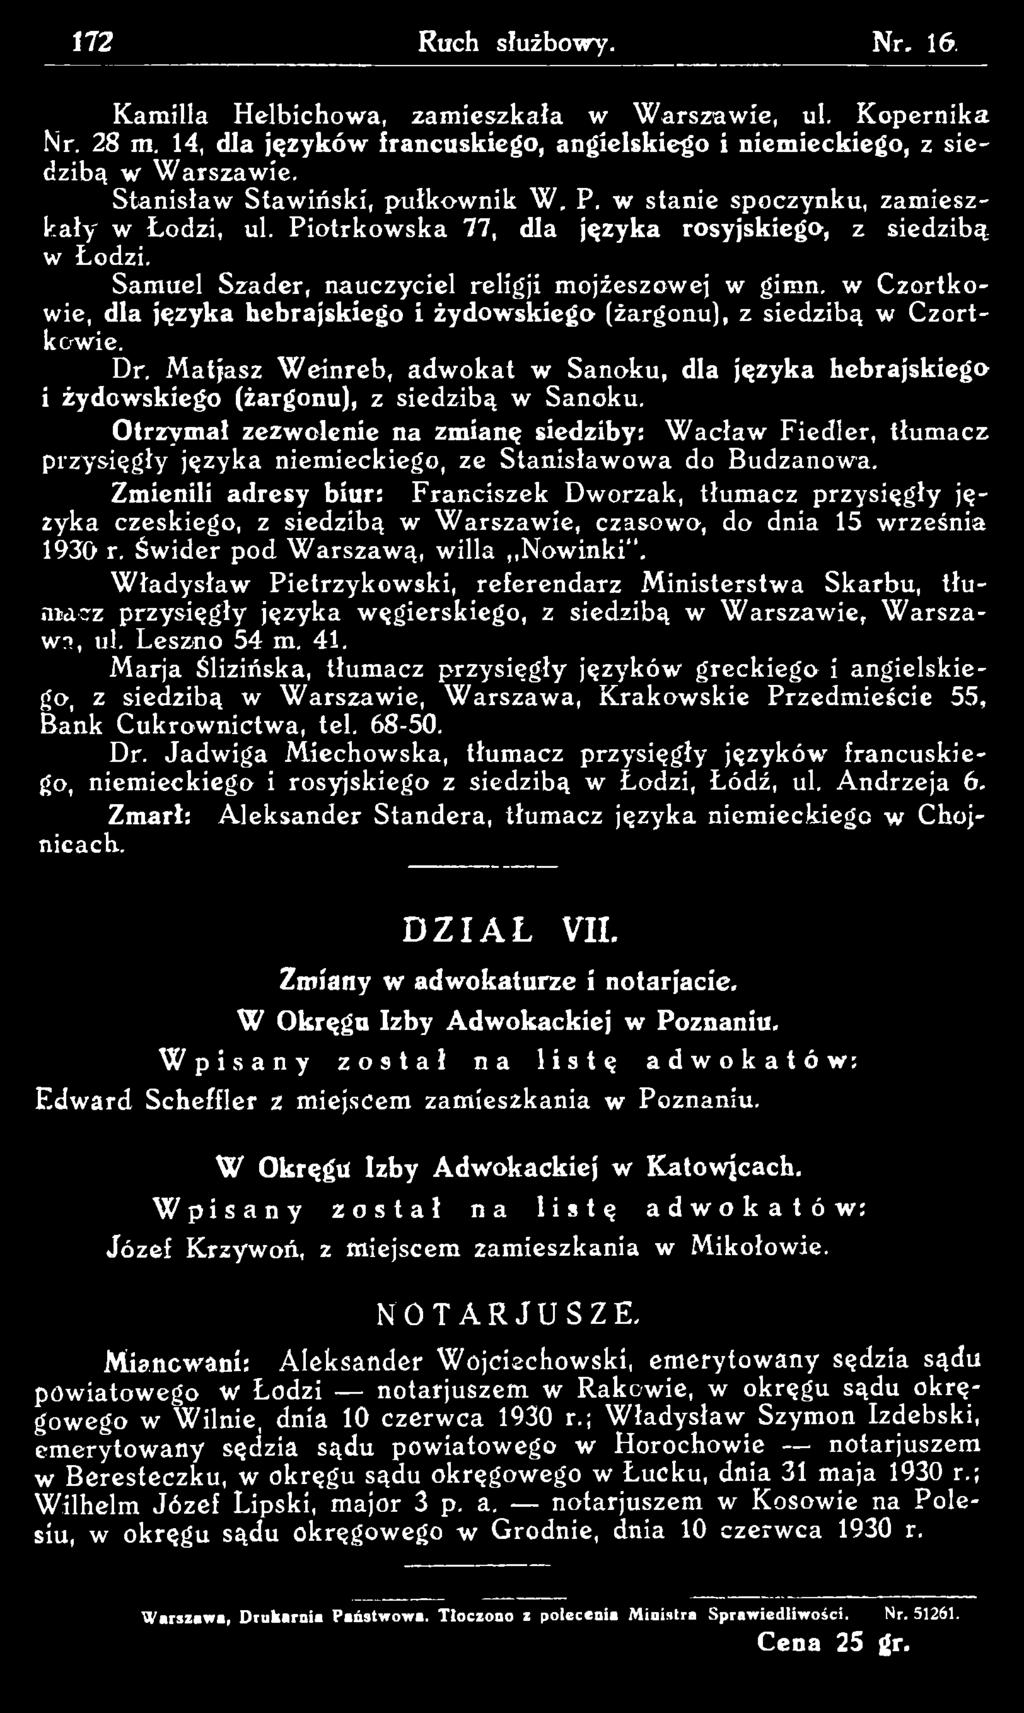 Zmienili adresy biur: Franciszek Dworzak, tłumacz przysięgły języka czeskiego, z siedzibą w W arszawie, czasowo, do dnia 15 września 1930 r.